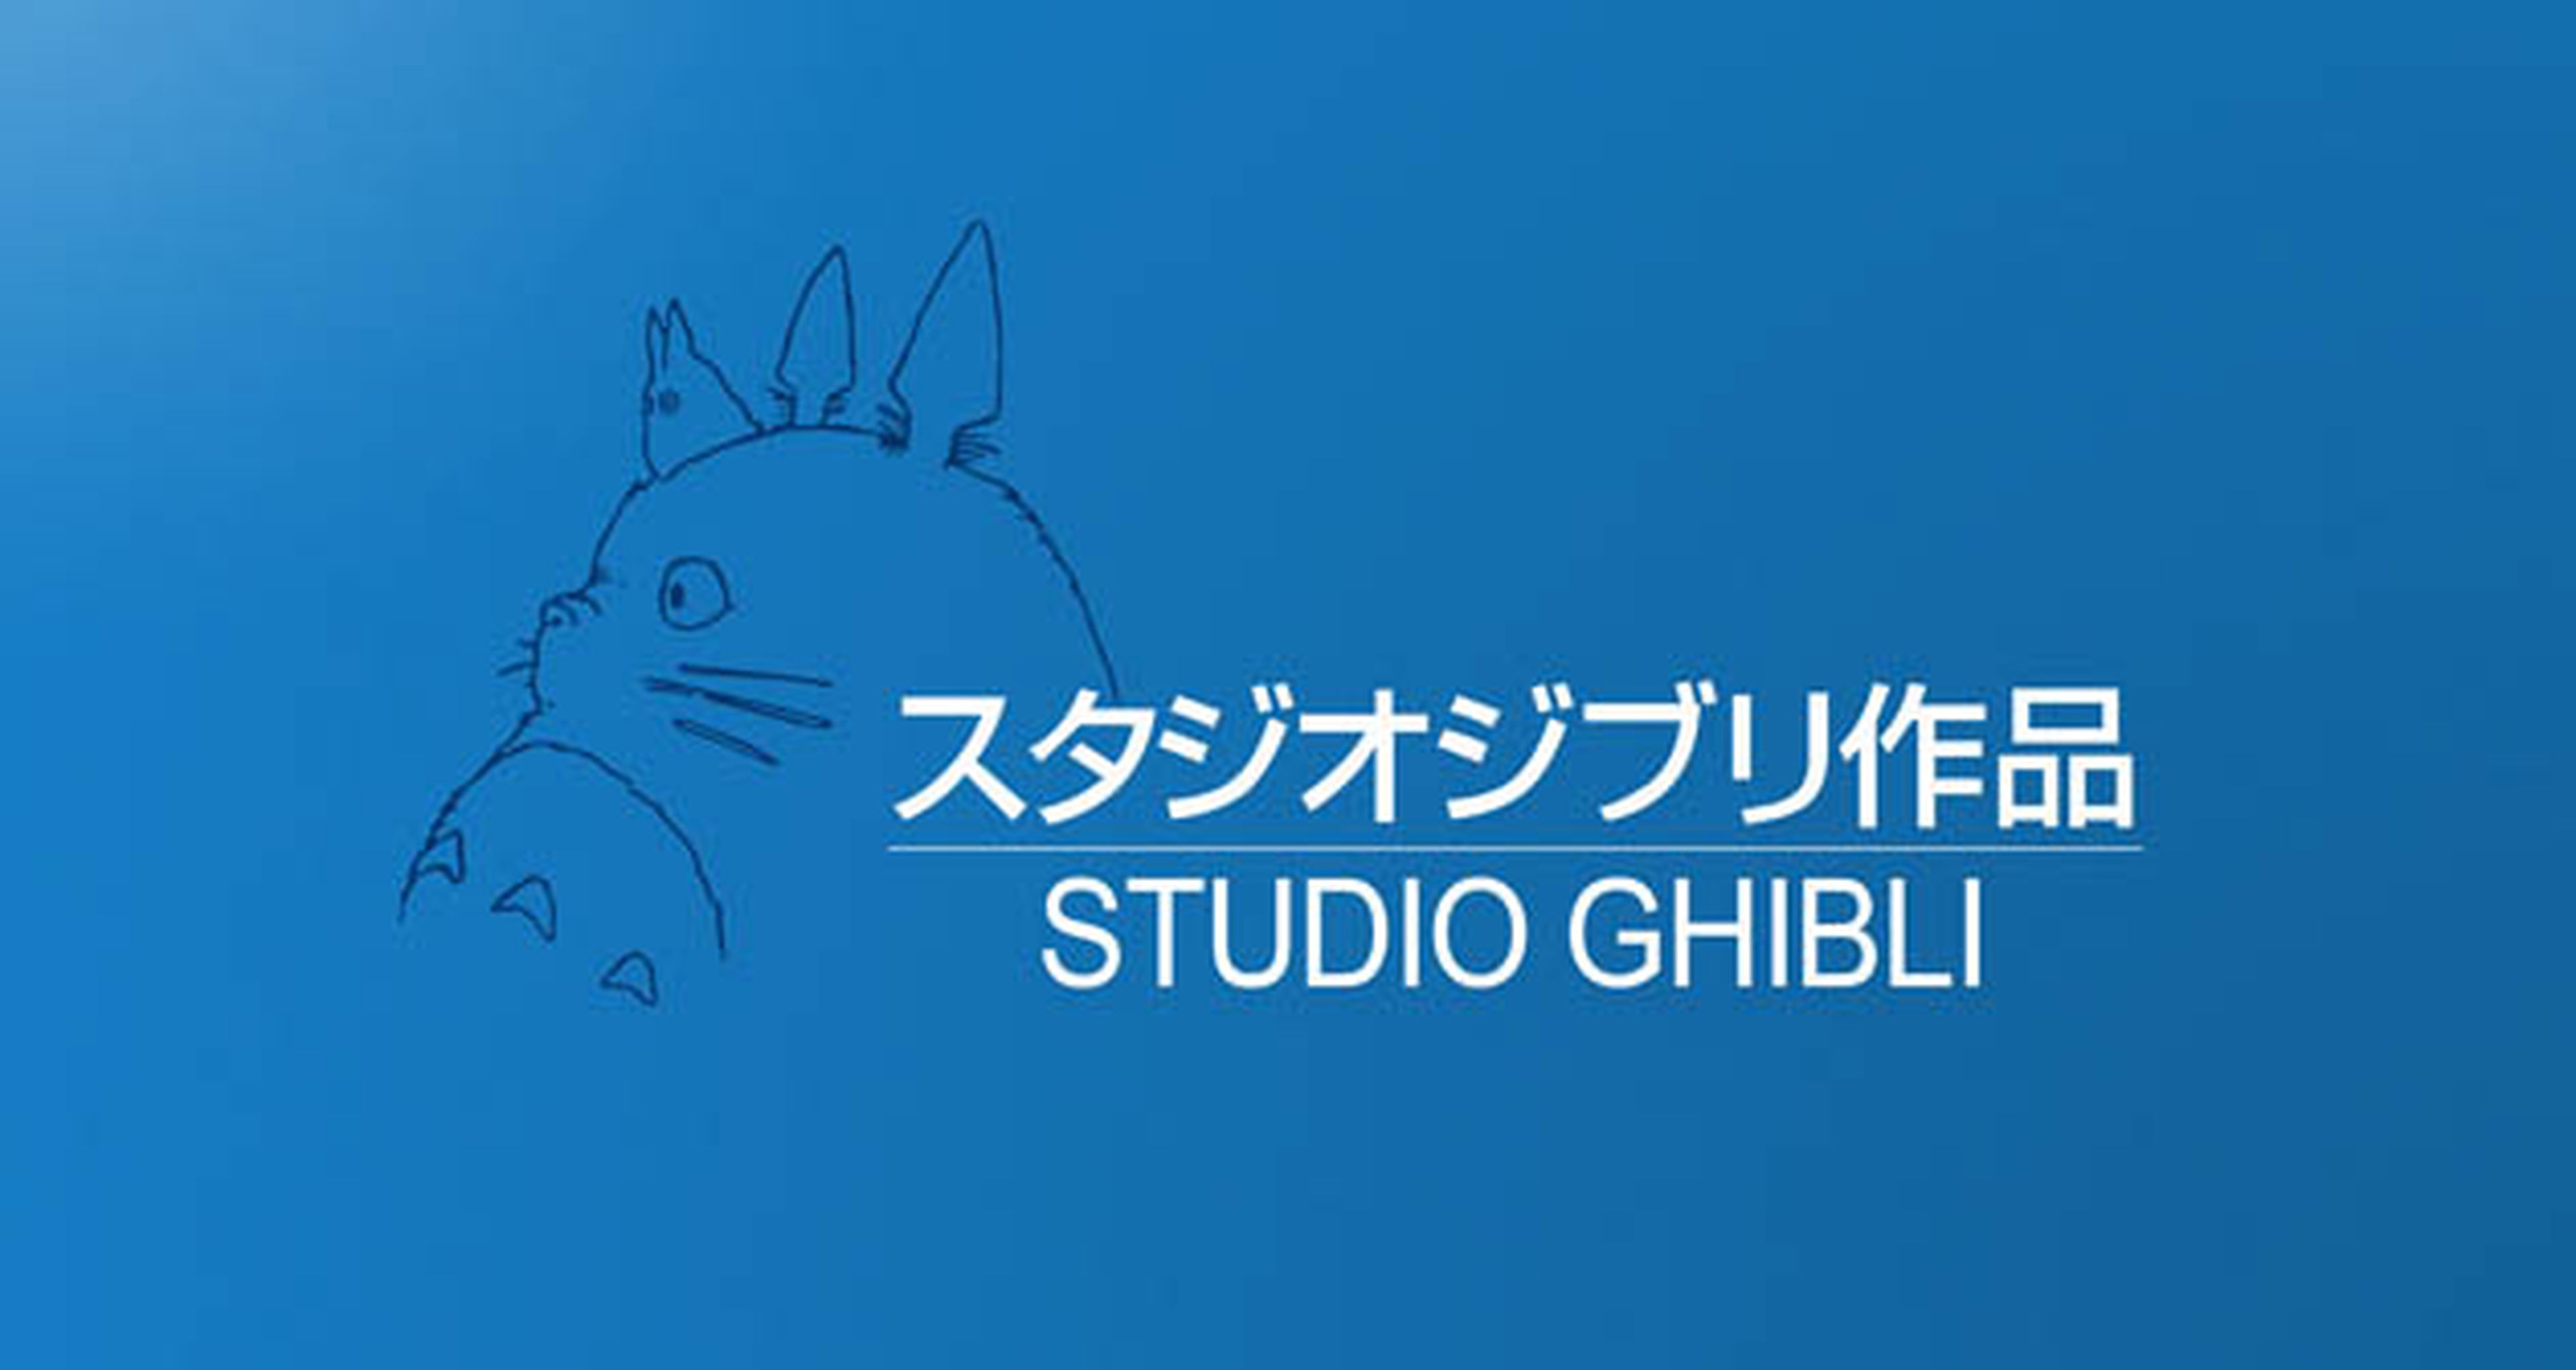 Ciclo de Studio Ghibli